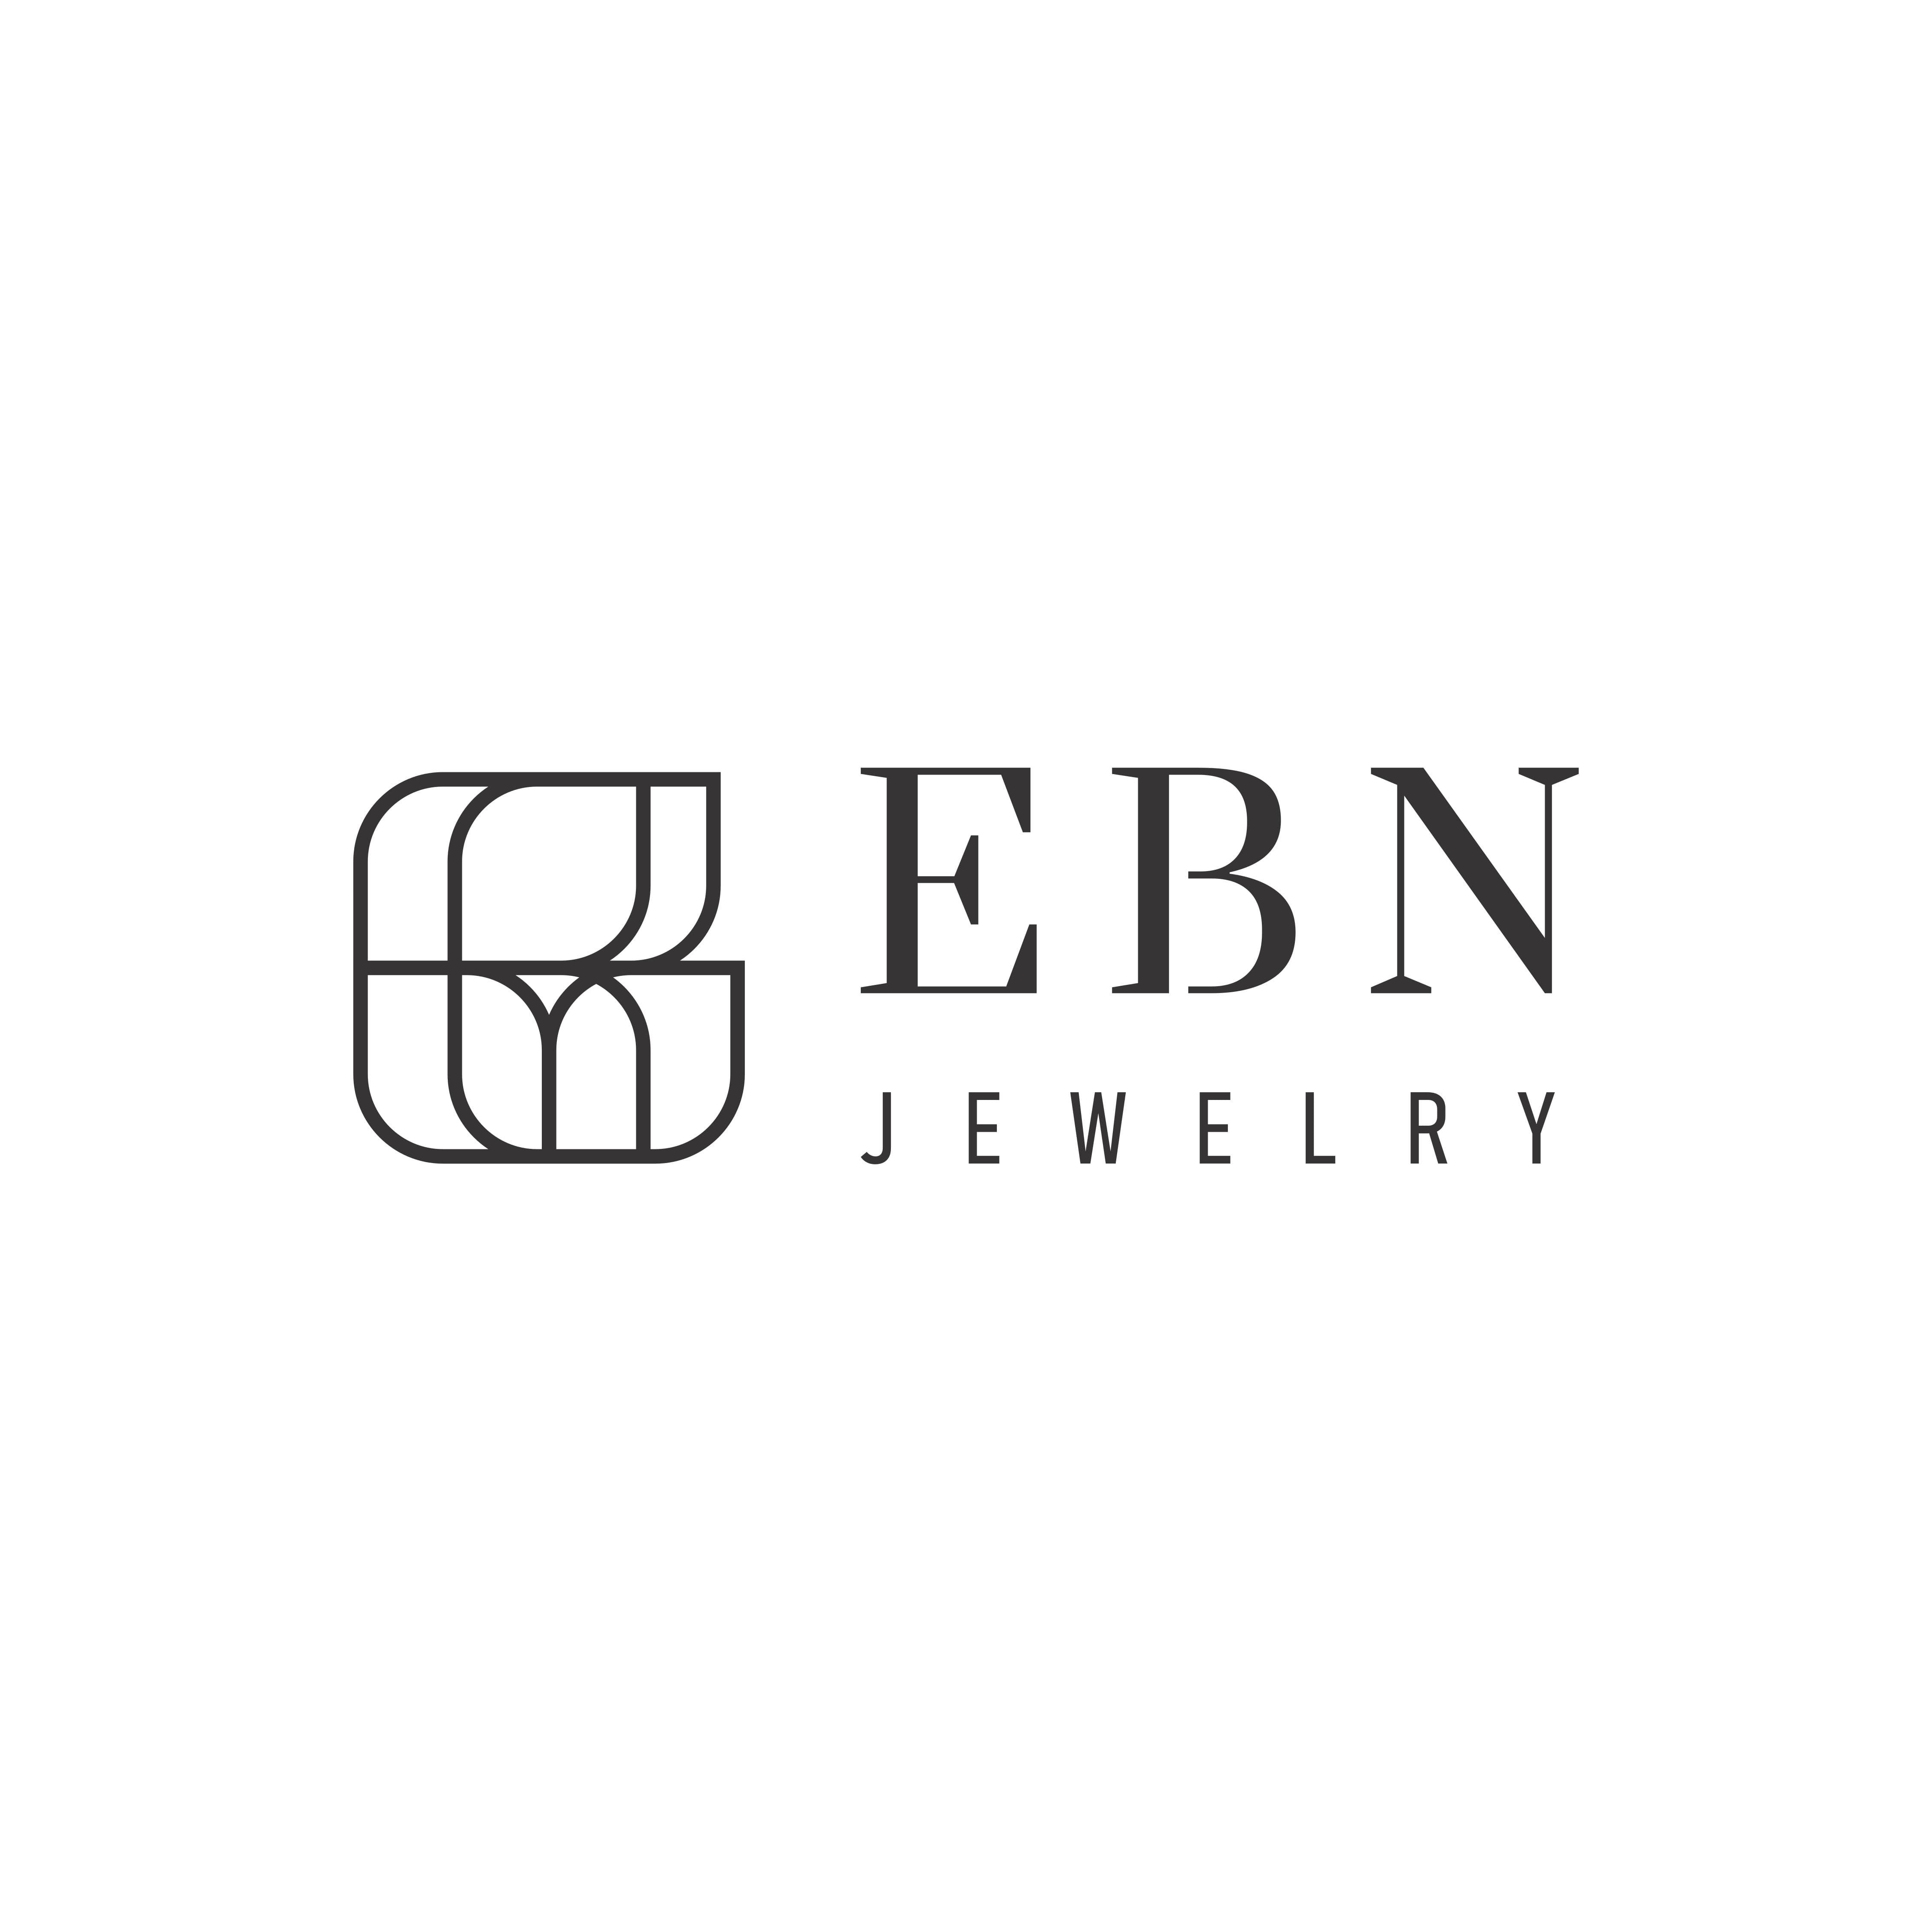 ebn jewelry | jewellery in ahmedabad, gujarat